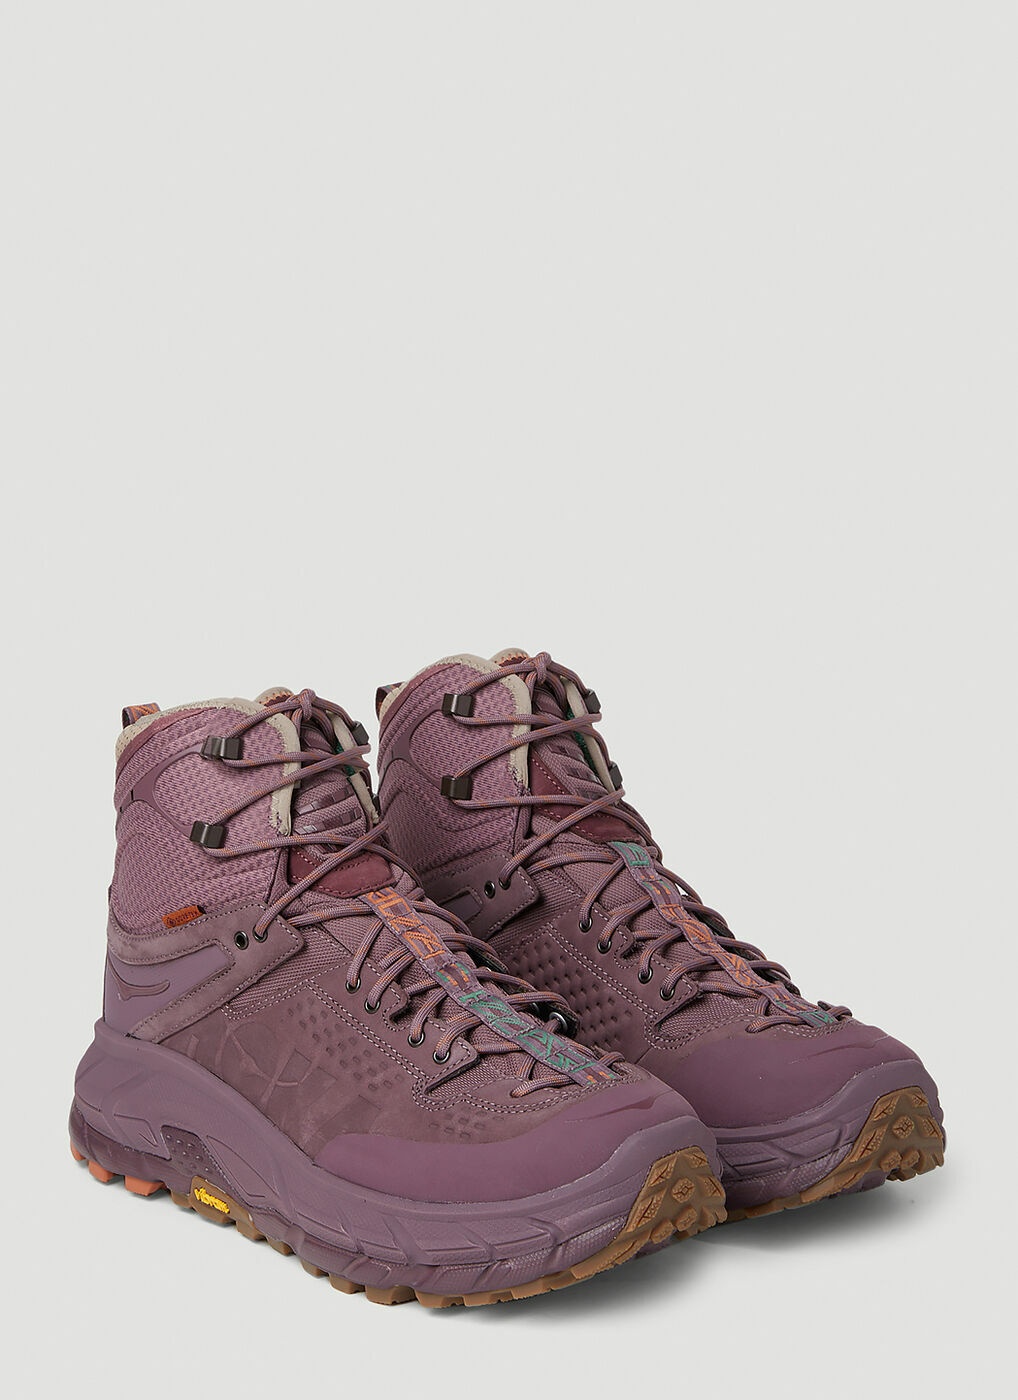 Hoka One One X Bodega Tor Ultra High Sneaker Boots in Purple